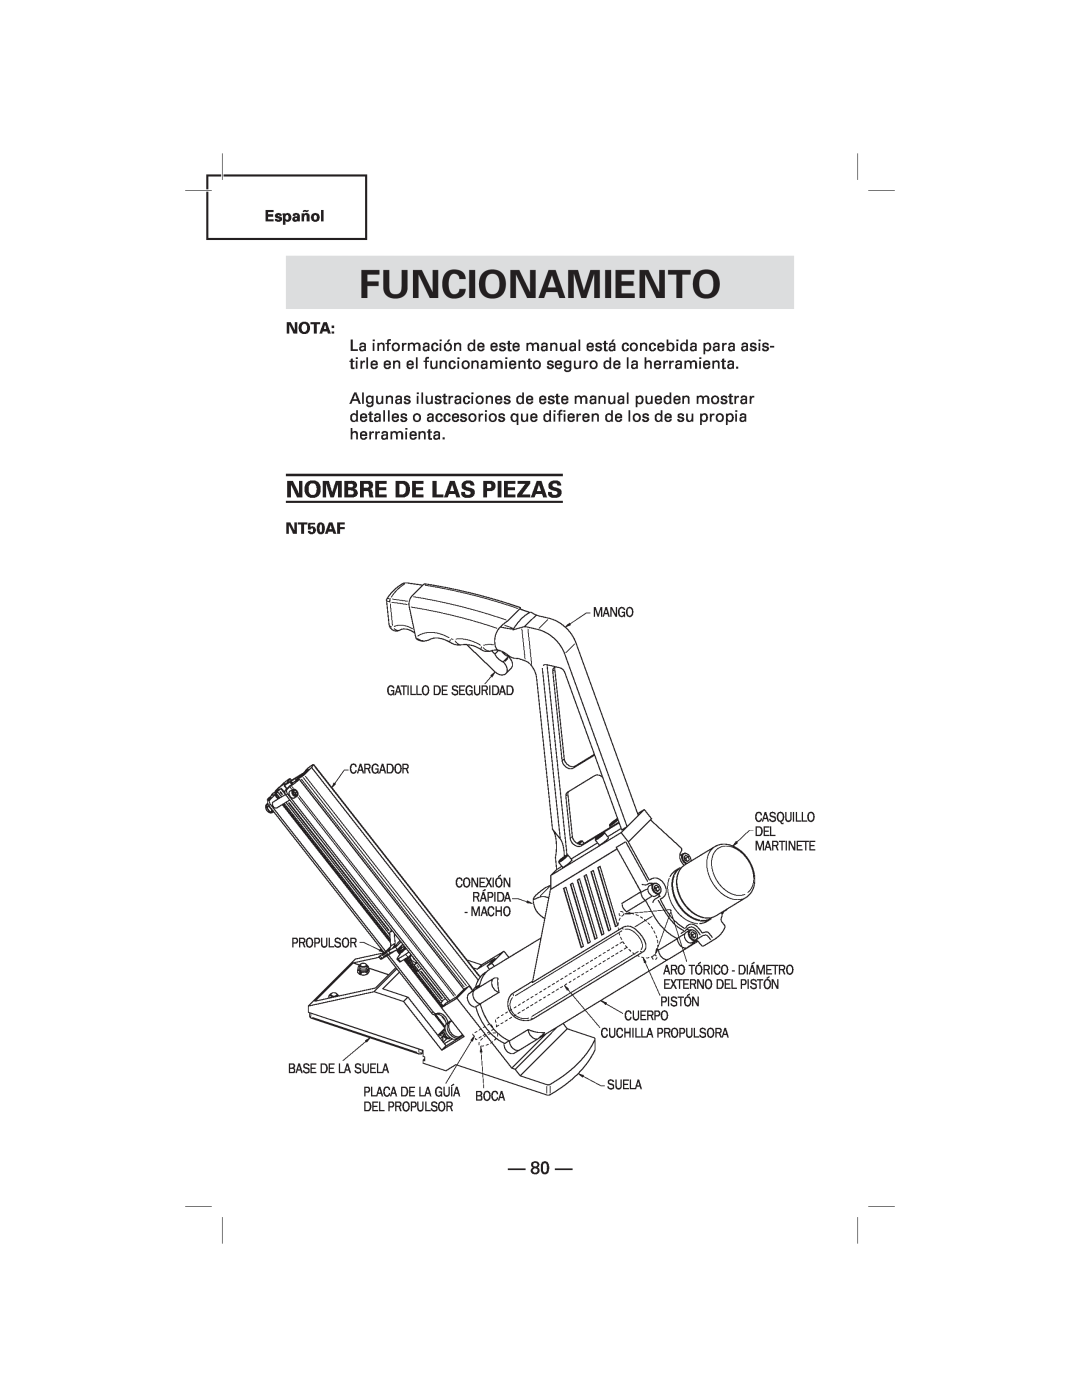 Hitachi N5009AF, NT50AF manual Funcionamiento, Nombre De Las Piezas 